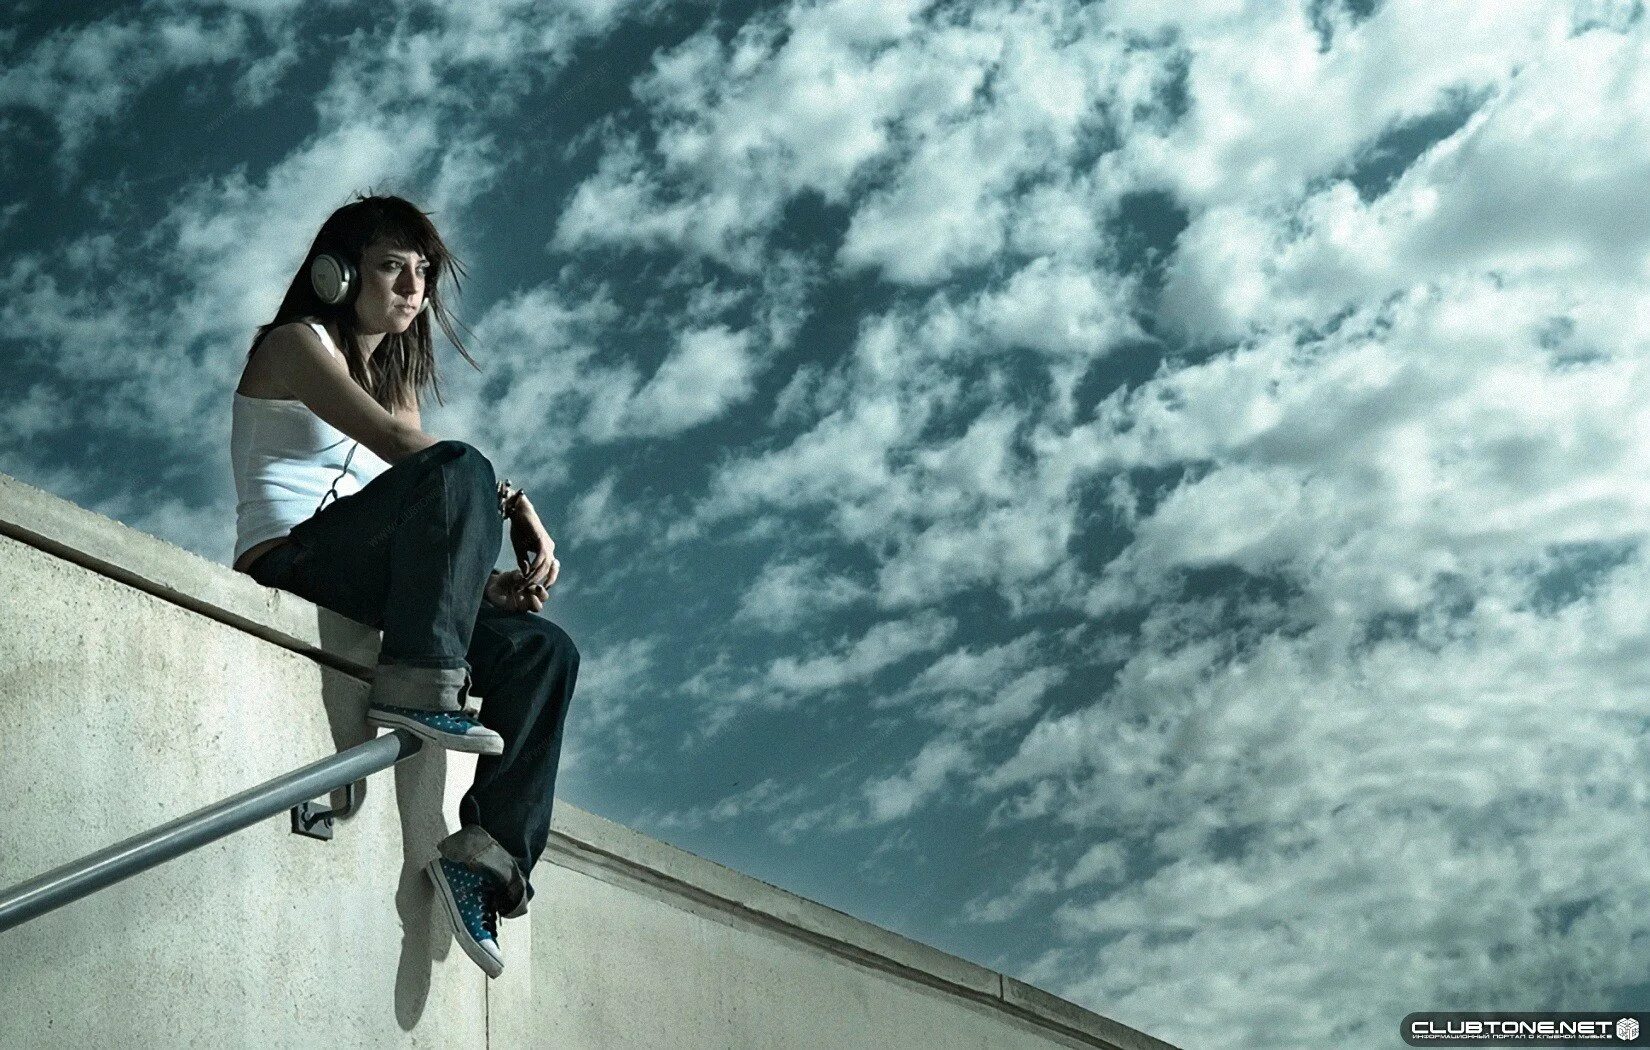 Нужные люди песни слушать. Девушка сидит на крыше свесив ноги. Девушка сидит на крыше.